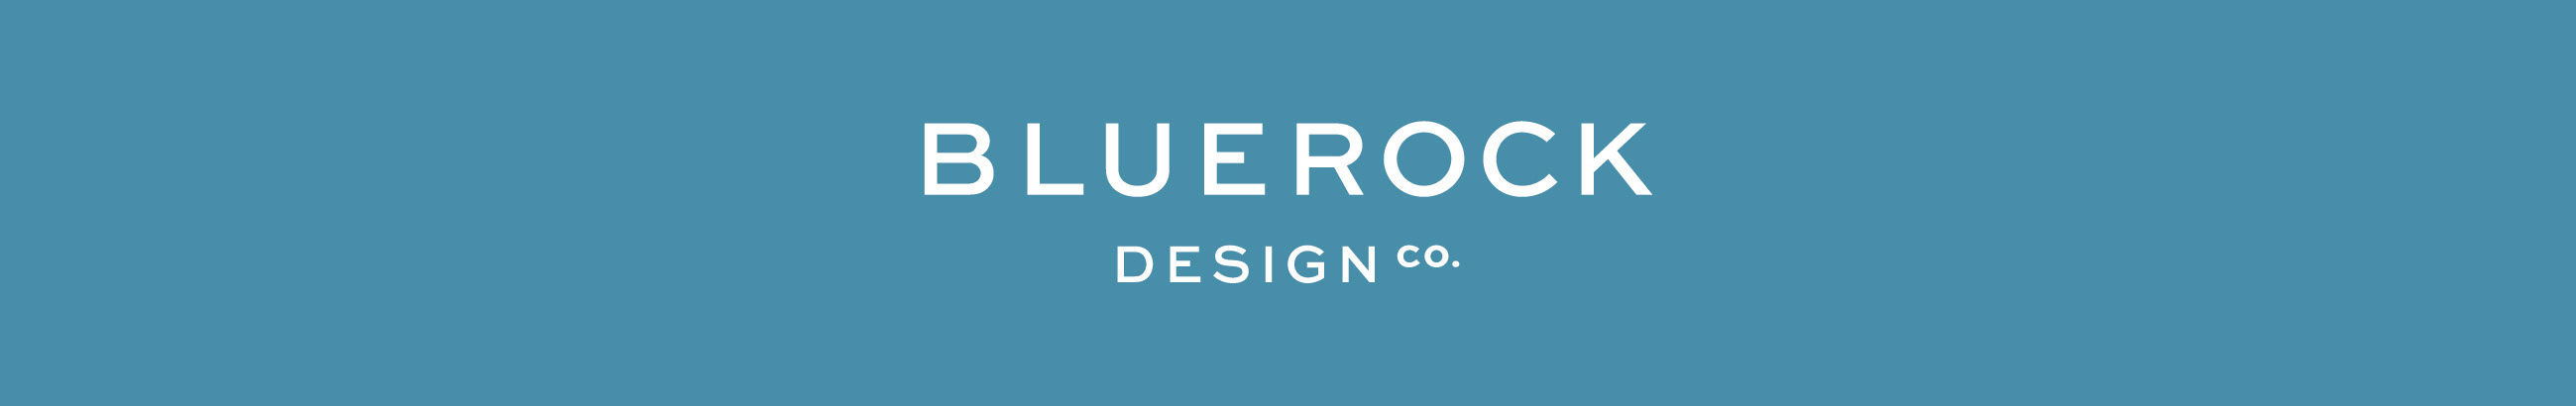 Bluerock Design Co.s profilbanner